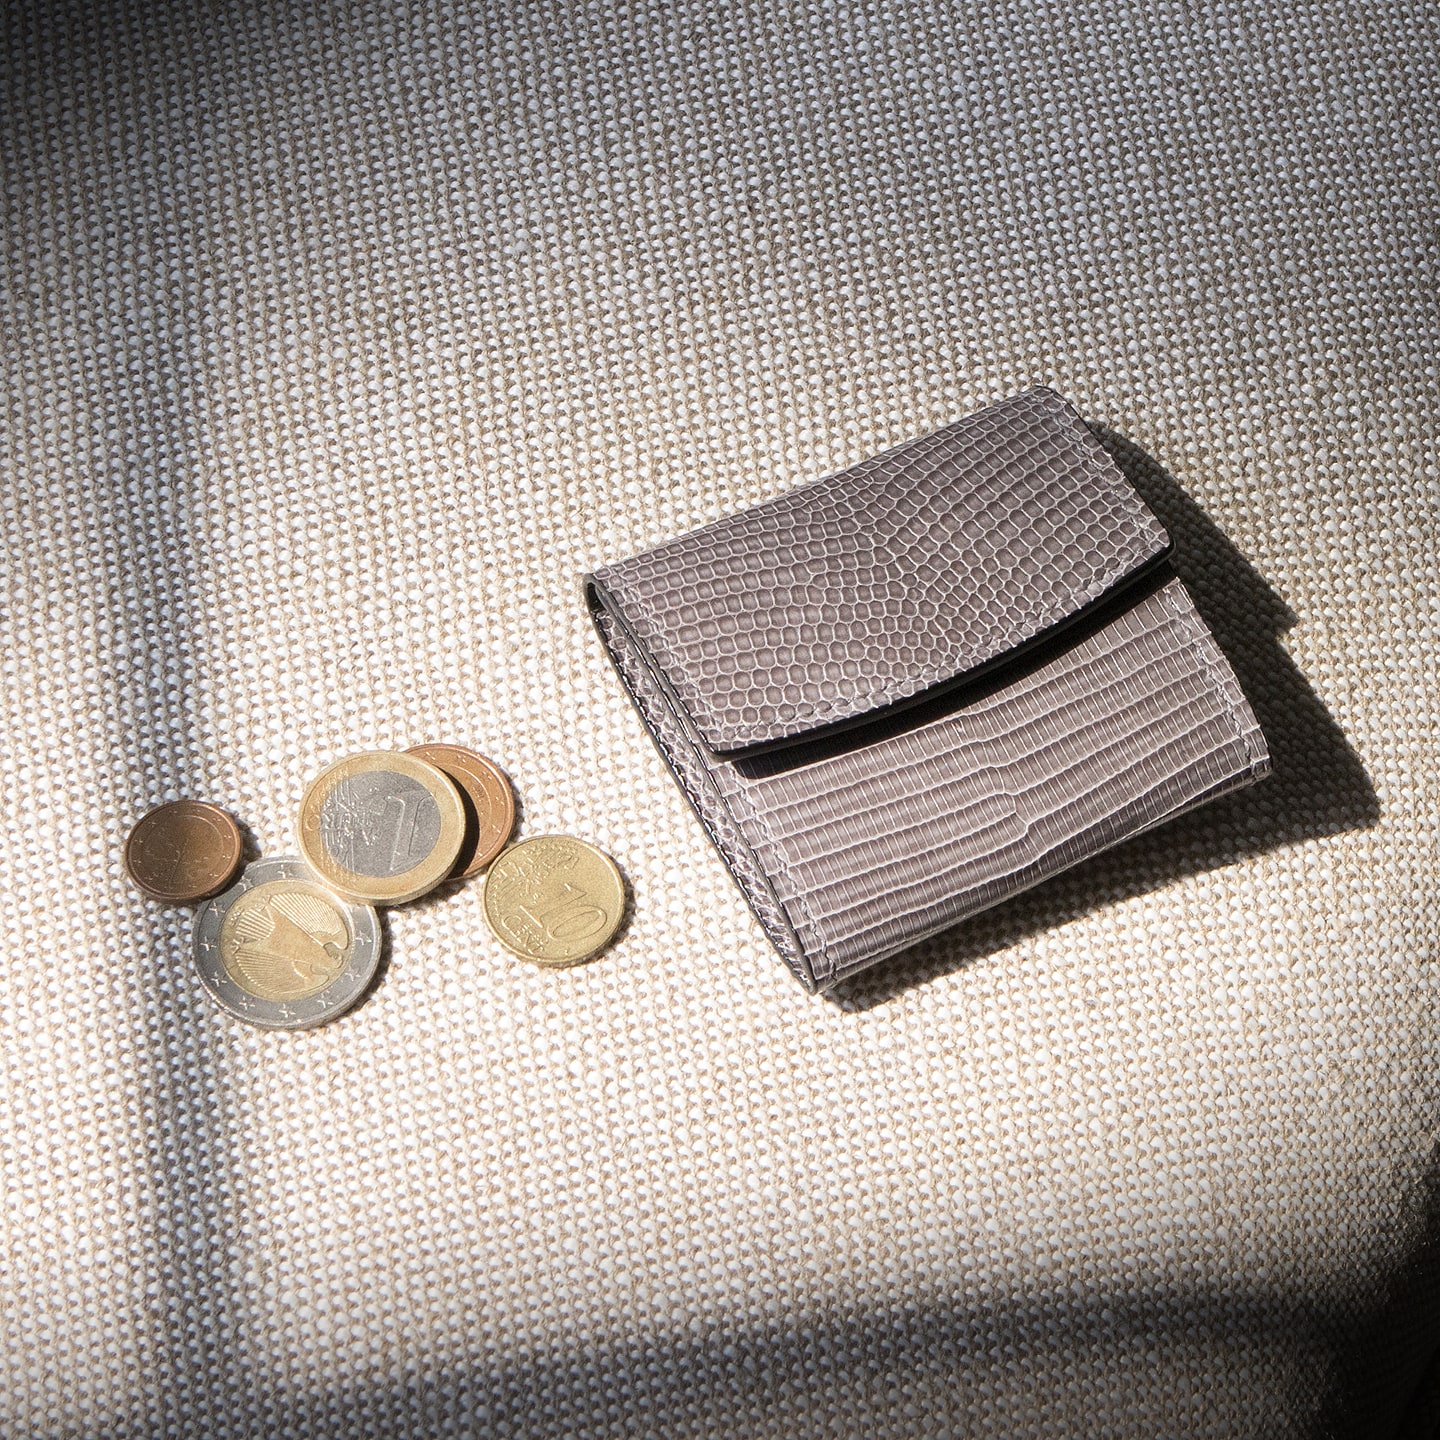 リザード コインケース | 大人の財布・ コインケース など拘りの日本製 